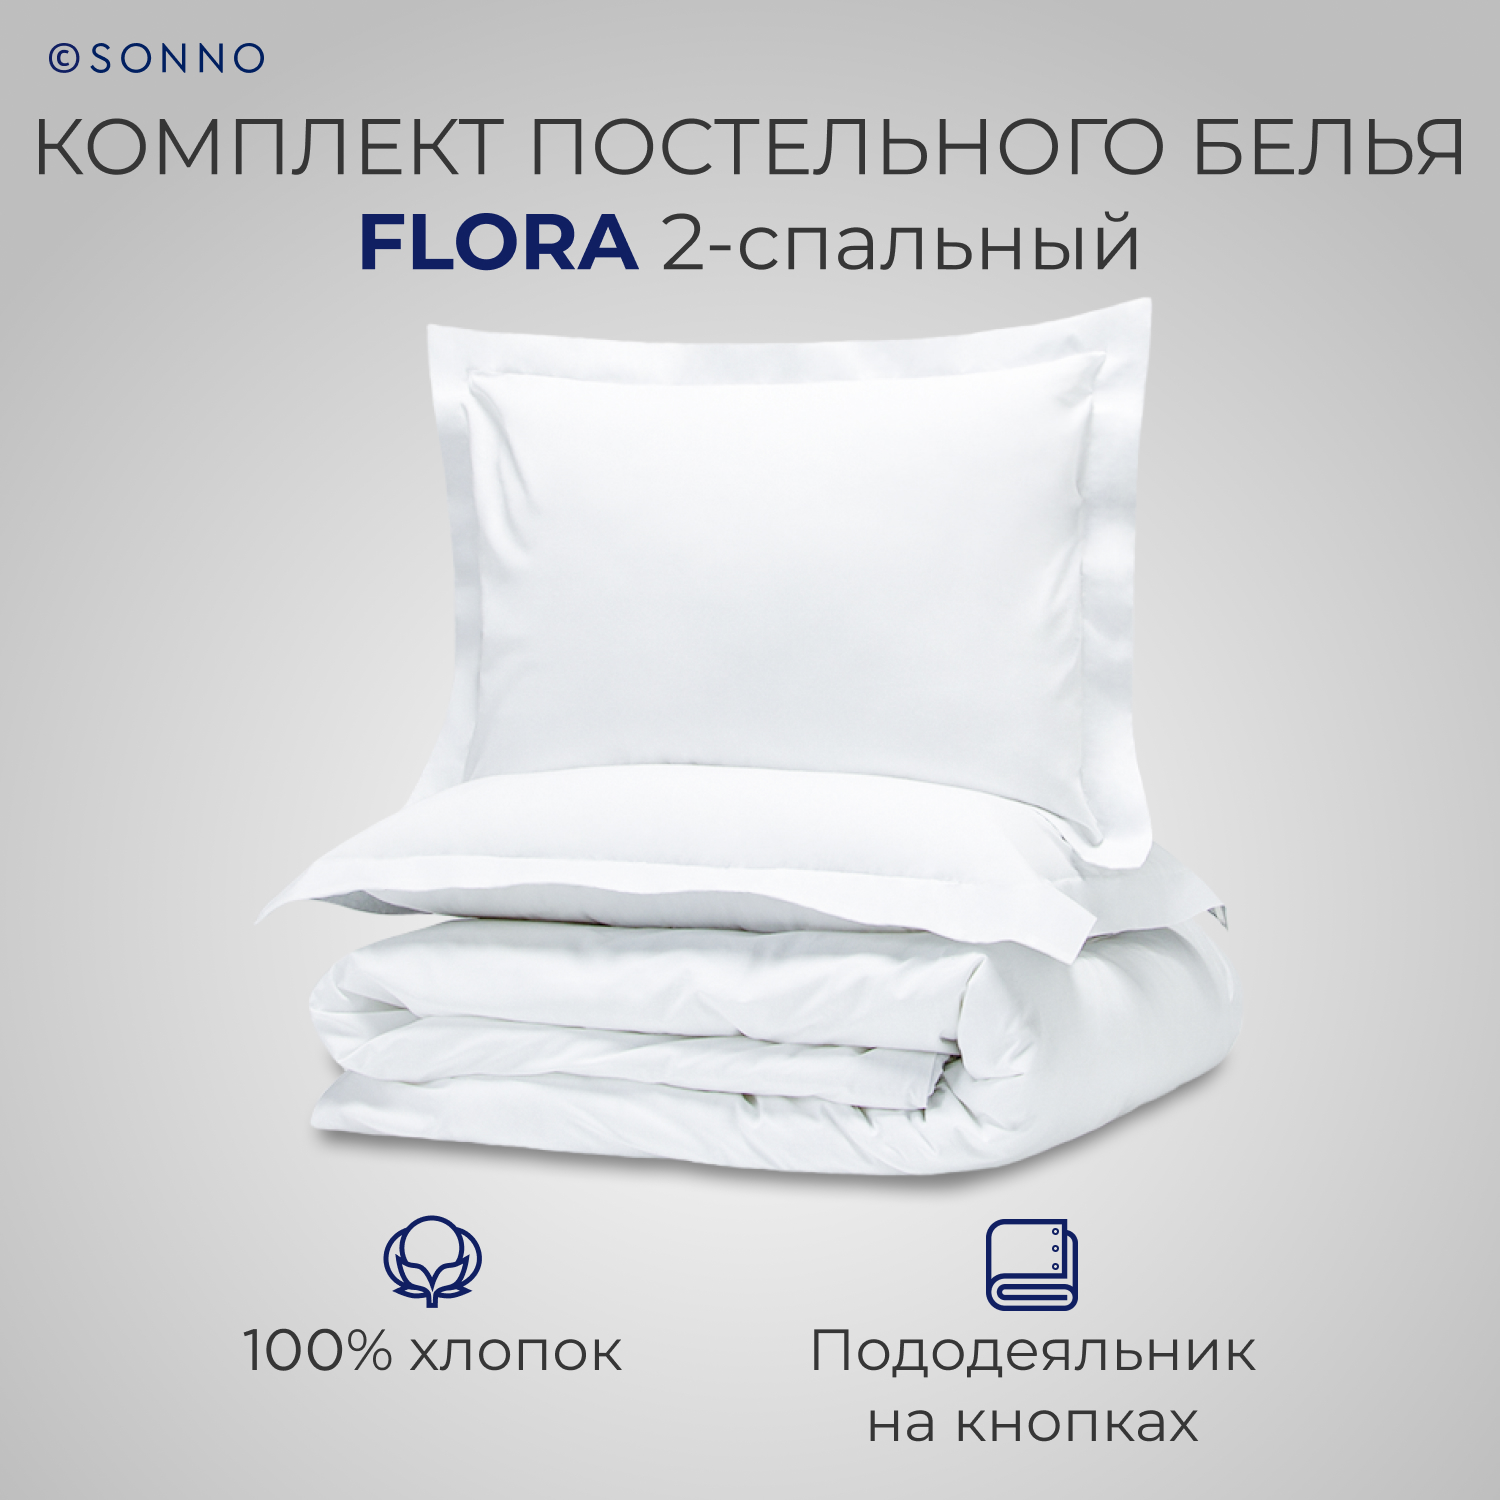 Комплект постельного белья SONNO FLORA 2-спальный цвет Ослепительно Белый - фото 1